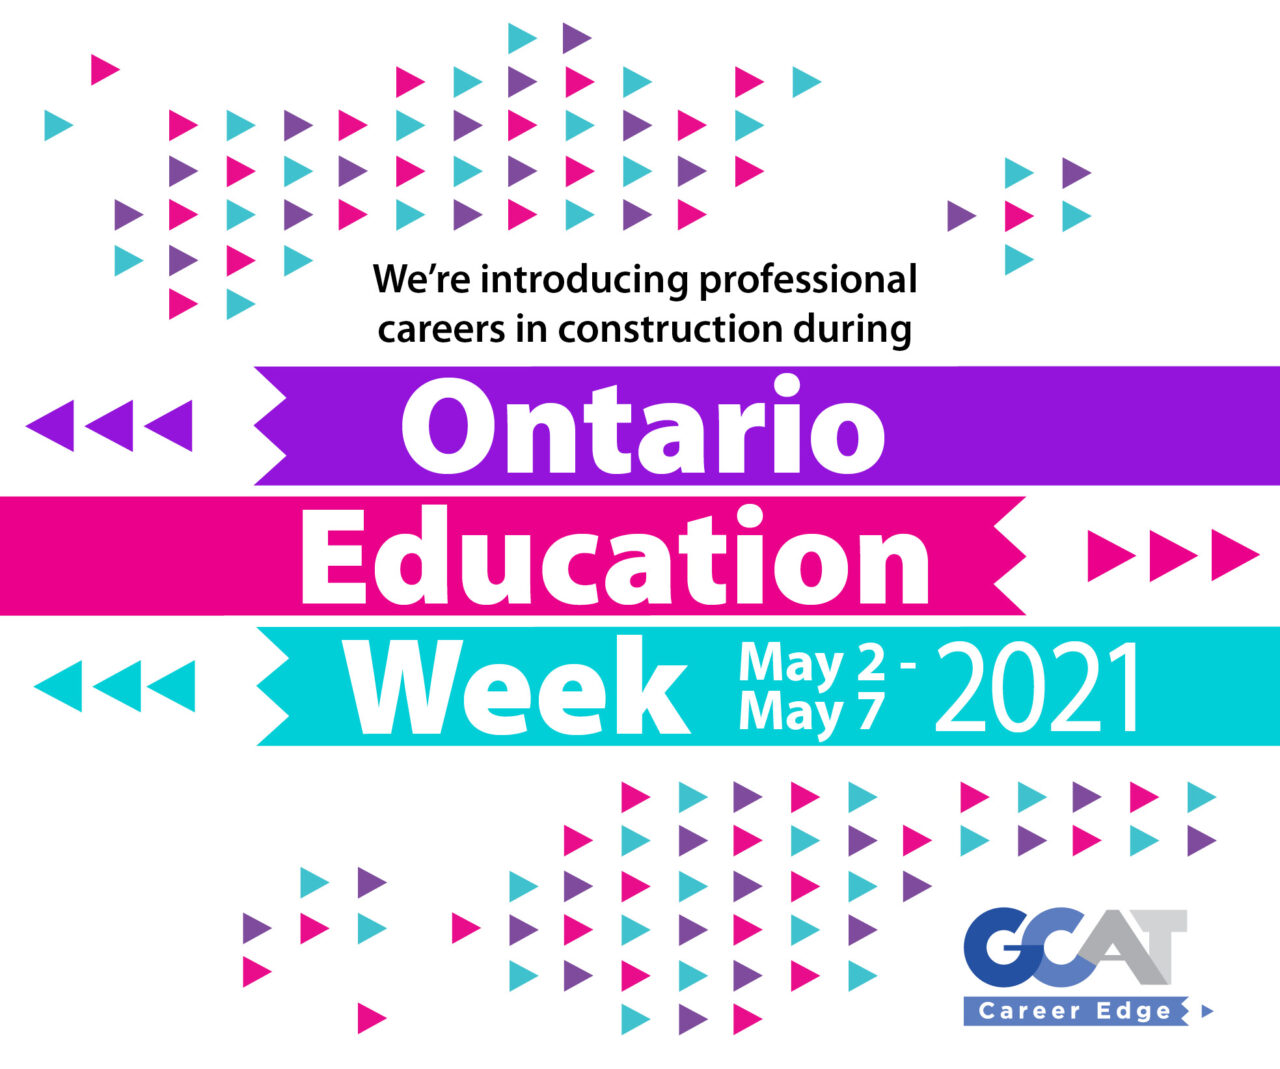 Ontario Education Week 2021 GCAT